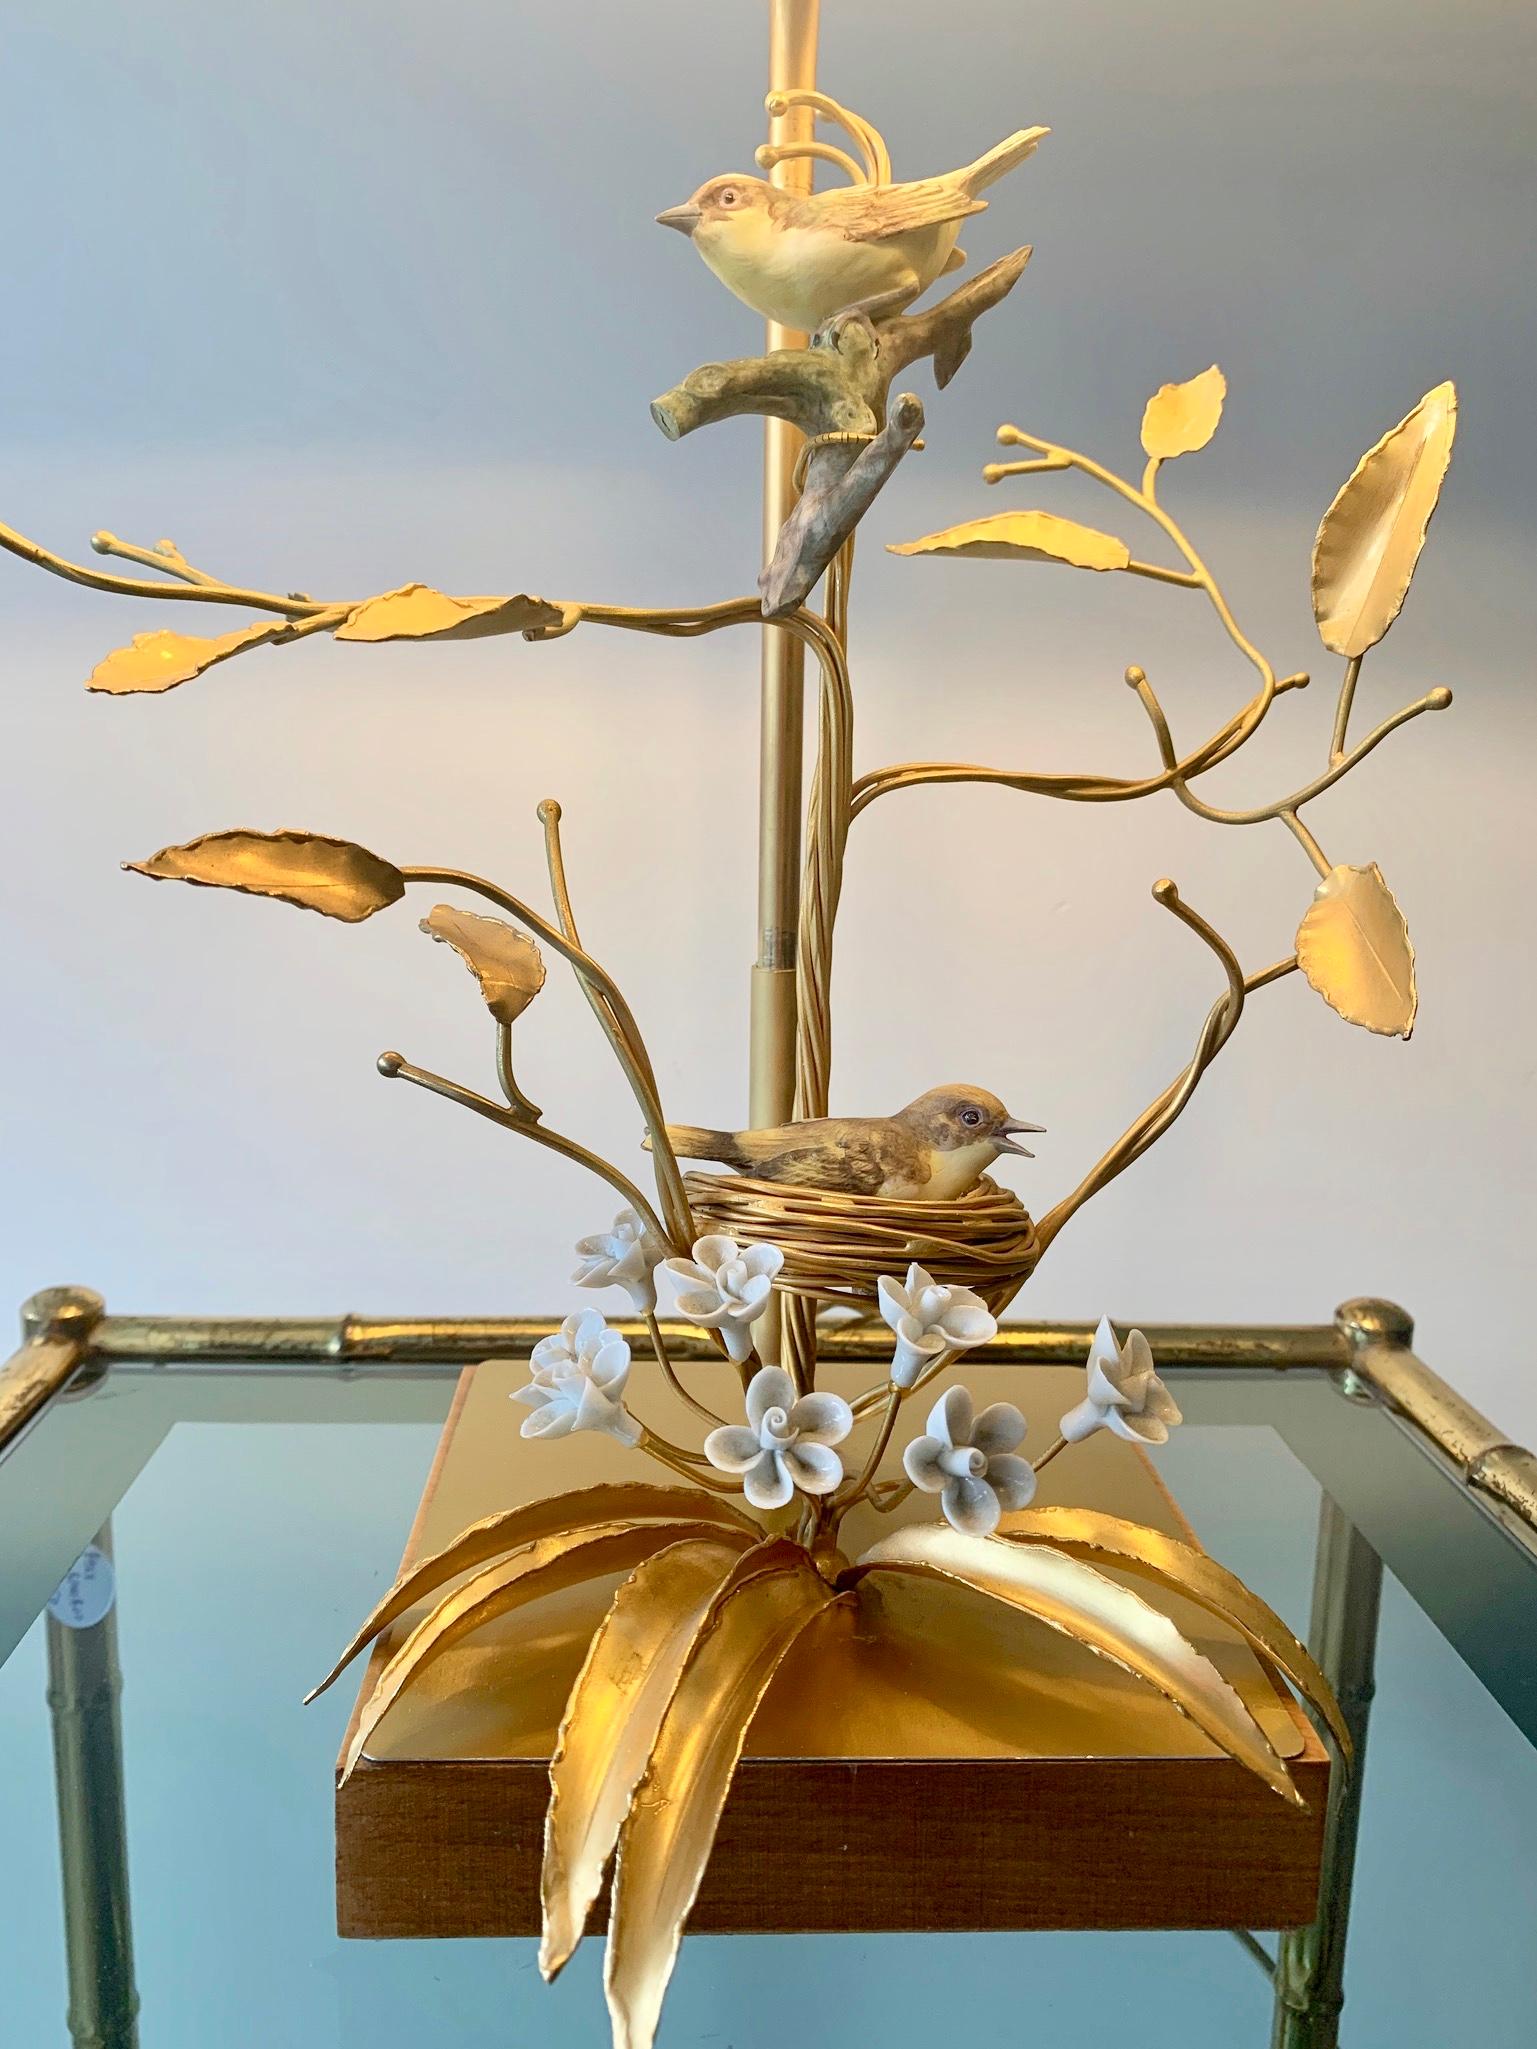 Wunderschöne Tischlampe im Holywood Regency-Stil. Holzsockel mit aufwändiger Metallvergoldung, die Äste mit einem Vogelnest darstellt. Die Vögel und Blumen sind aus schönem Biskuitporzellan gefertigt.
 
Der Lampenständer ist in der Höhe verstellbar.